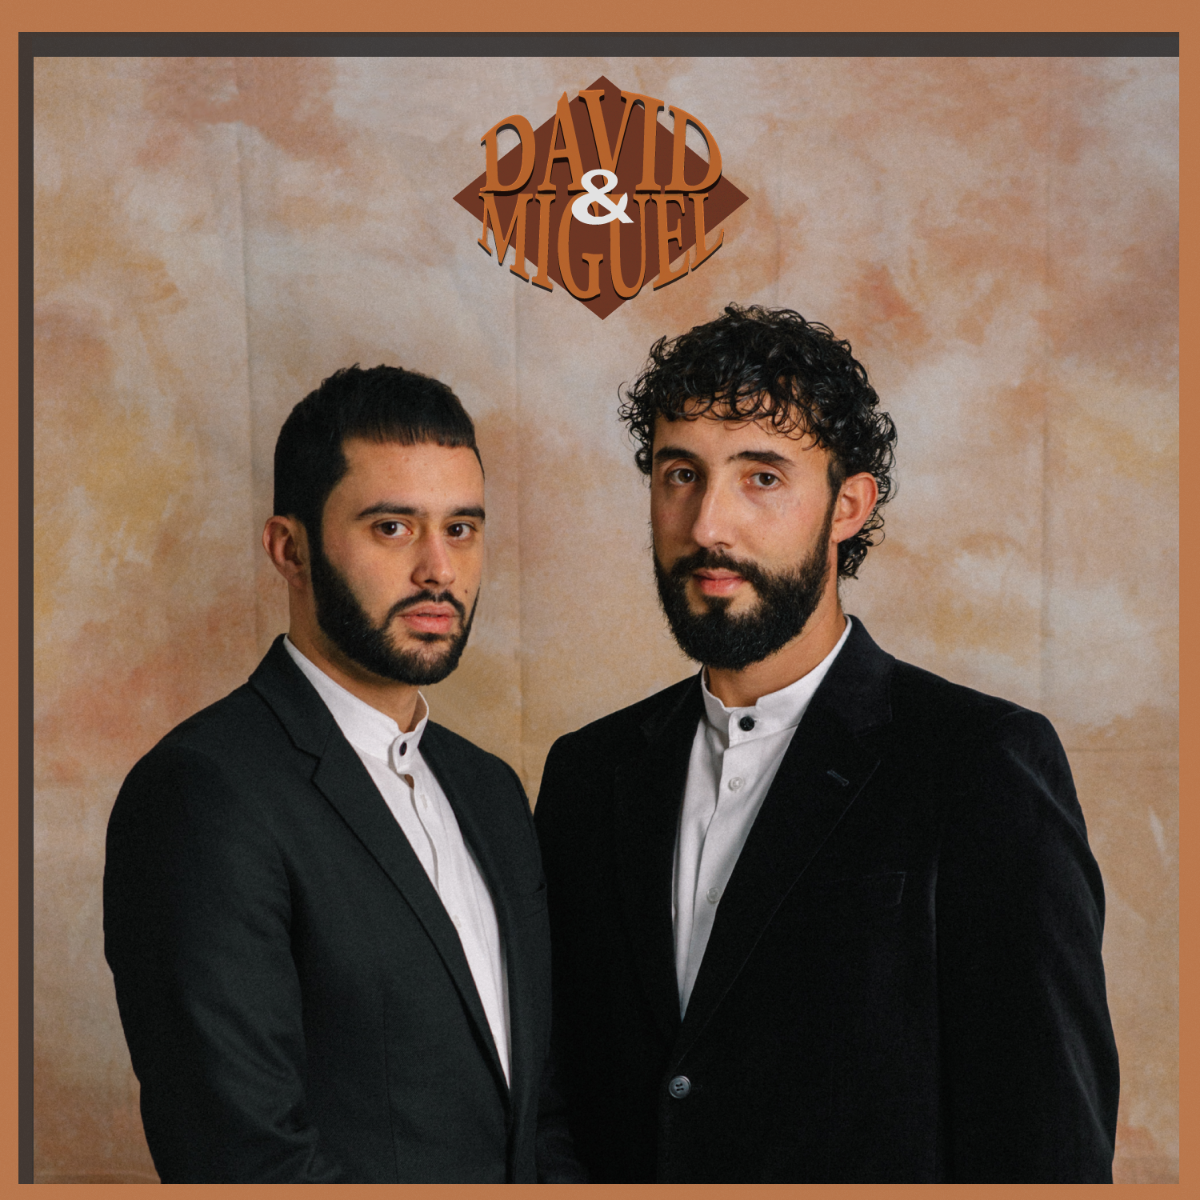 Palavras Cruzadas é o primeiro álbum de David & Miguel